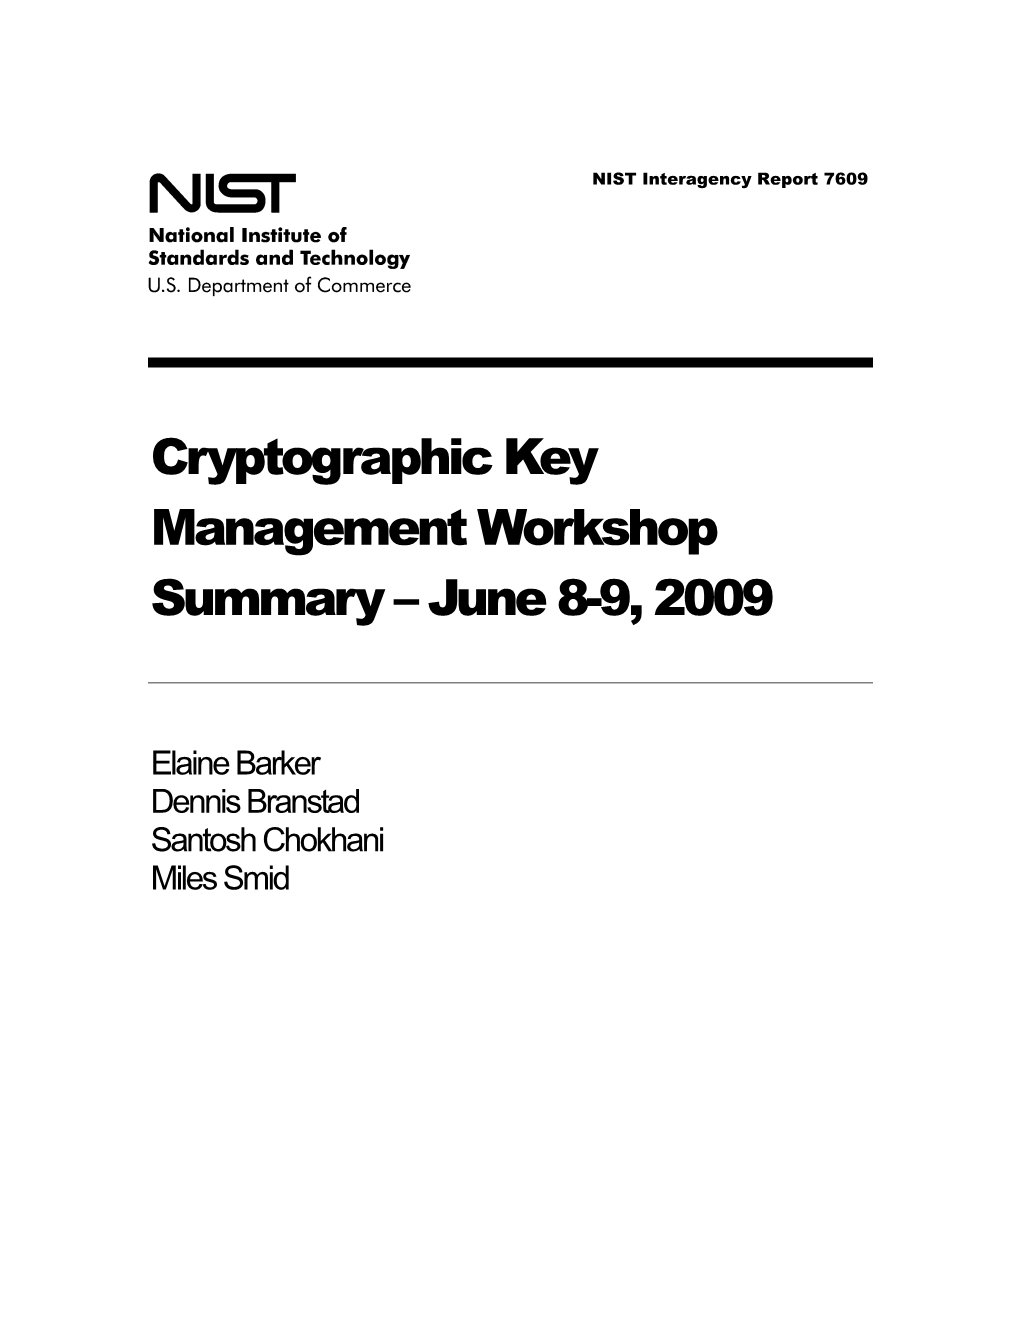 Cryptographic Key Management Workshop Summary – June 8-9, 2009